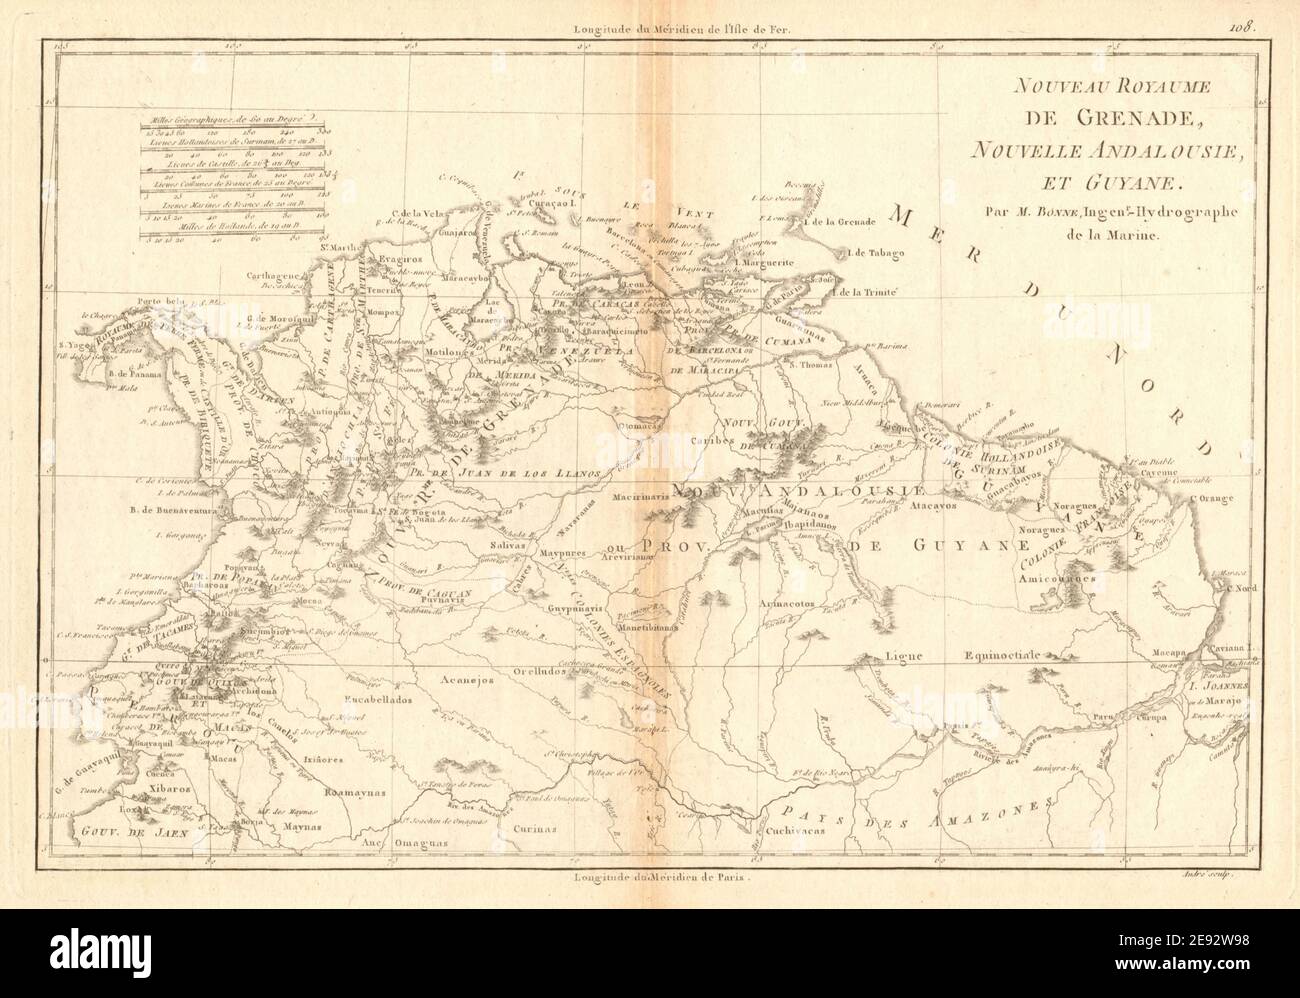 Nouveau Royaume de Grenade, Nouvelle Andalousie et Guyane. BONNE 1788 old map Stock Photo